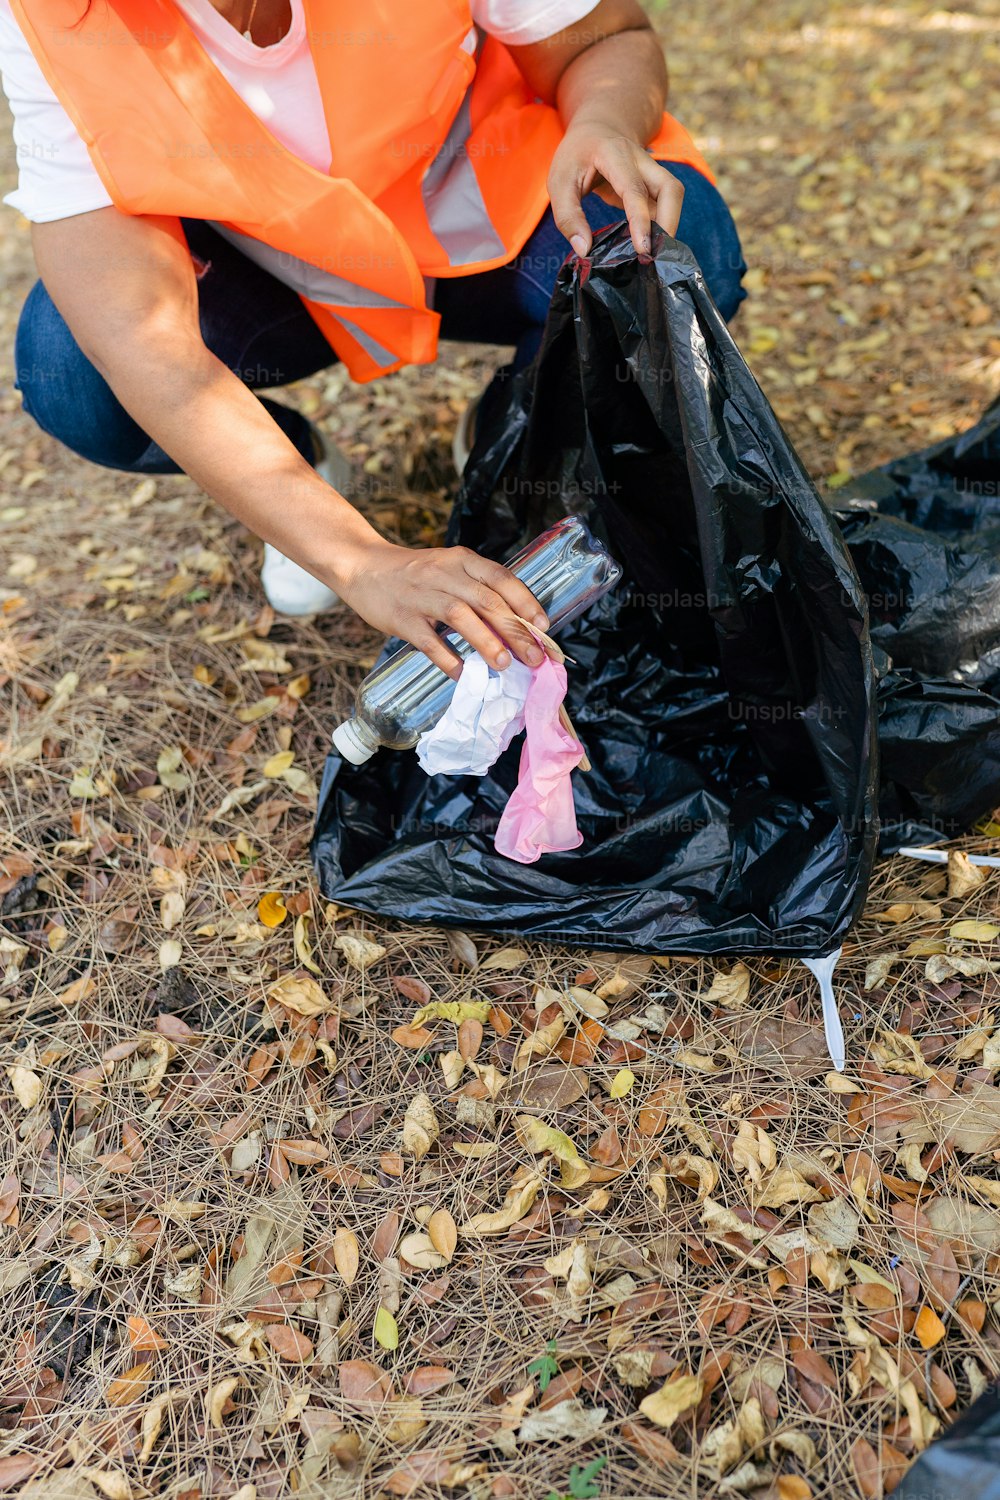 Una donna con un giubbotto arancione sta raccogliendo la spazzatura